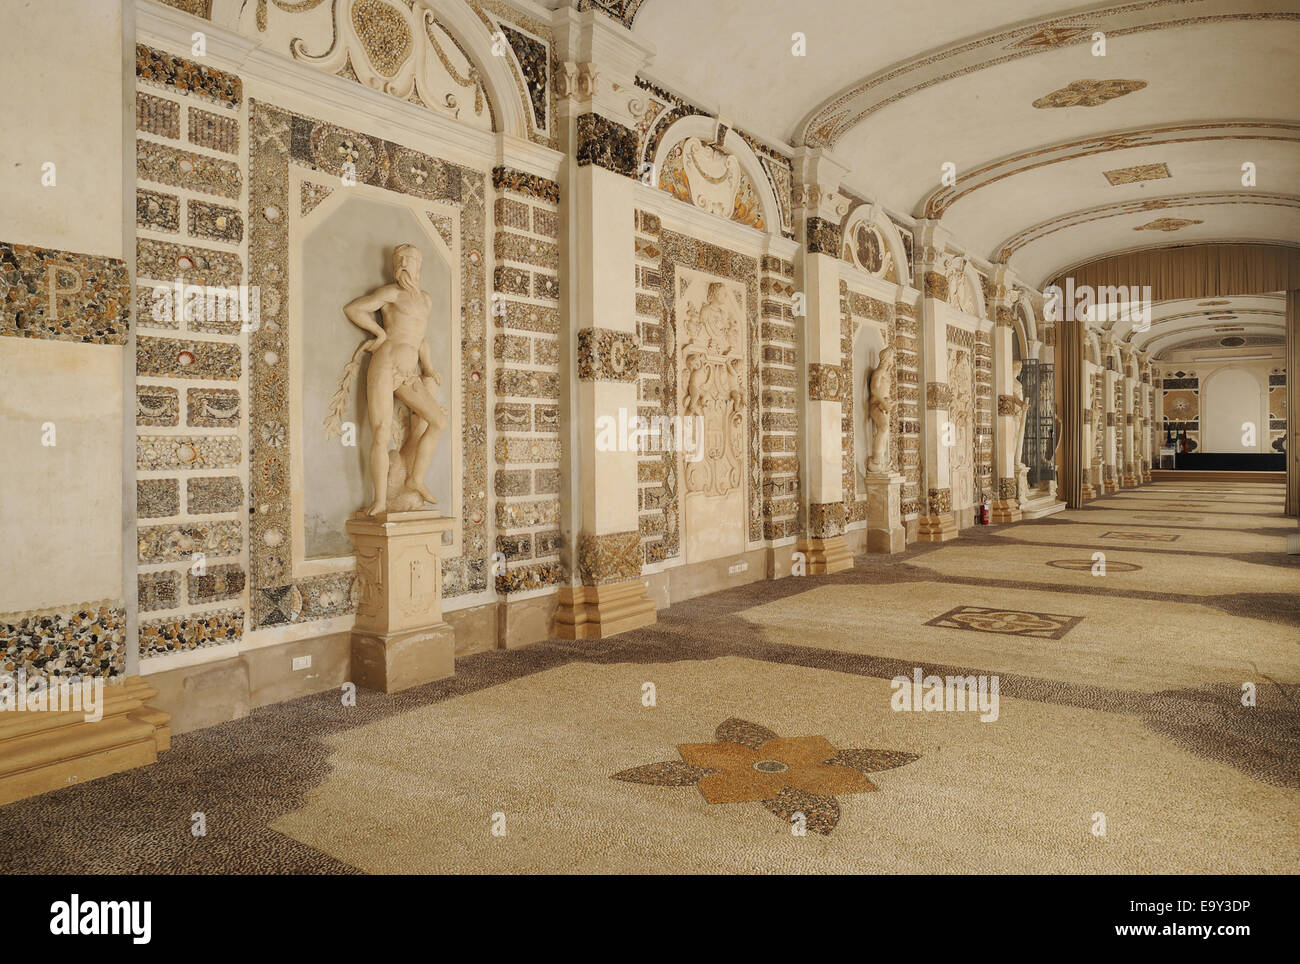 Prix coquilles, Contarini, par le célèbre architecte italien Andrea Palladio, Piazzola sul Brenta, Padoue, Vénétie, Italie Banque D'Images